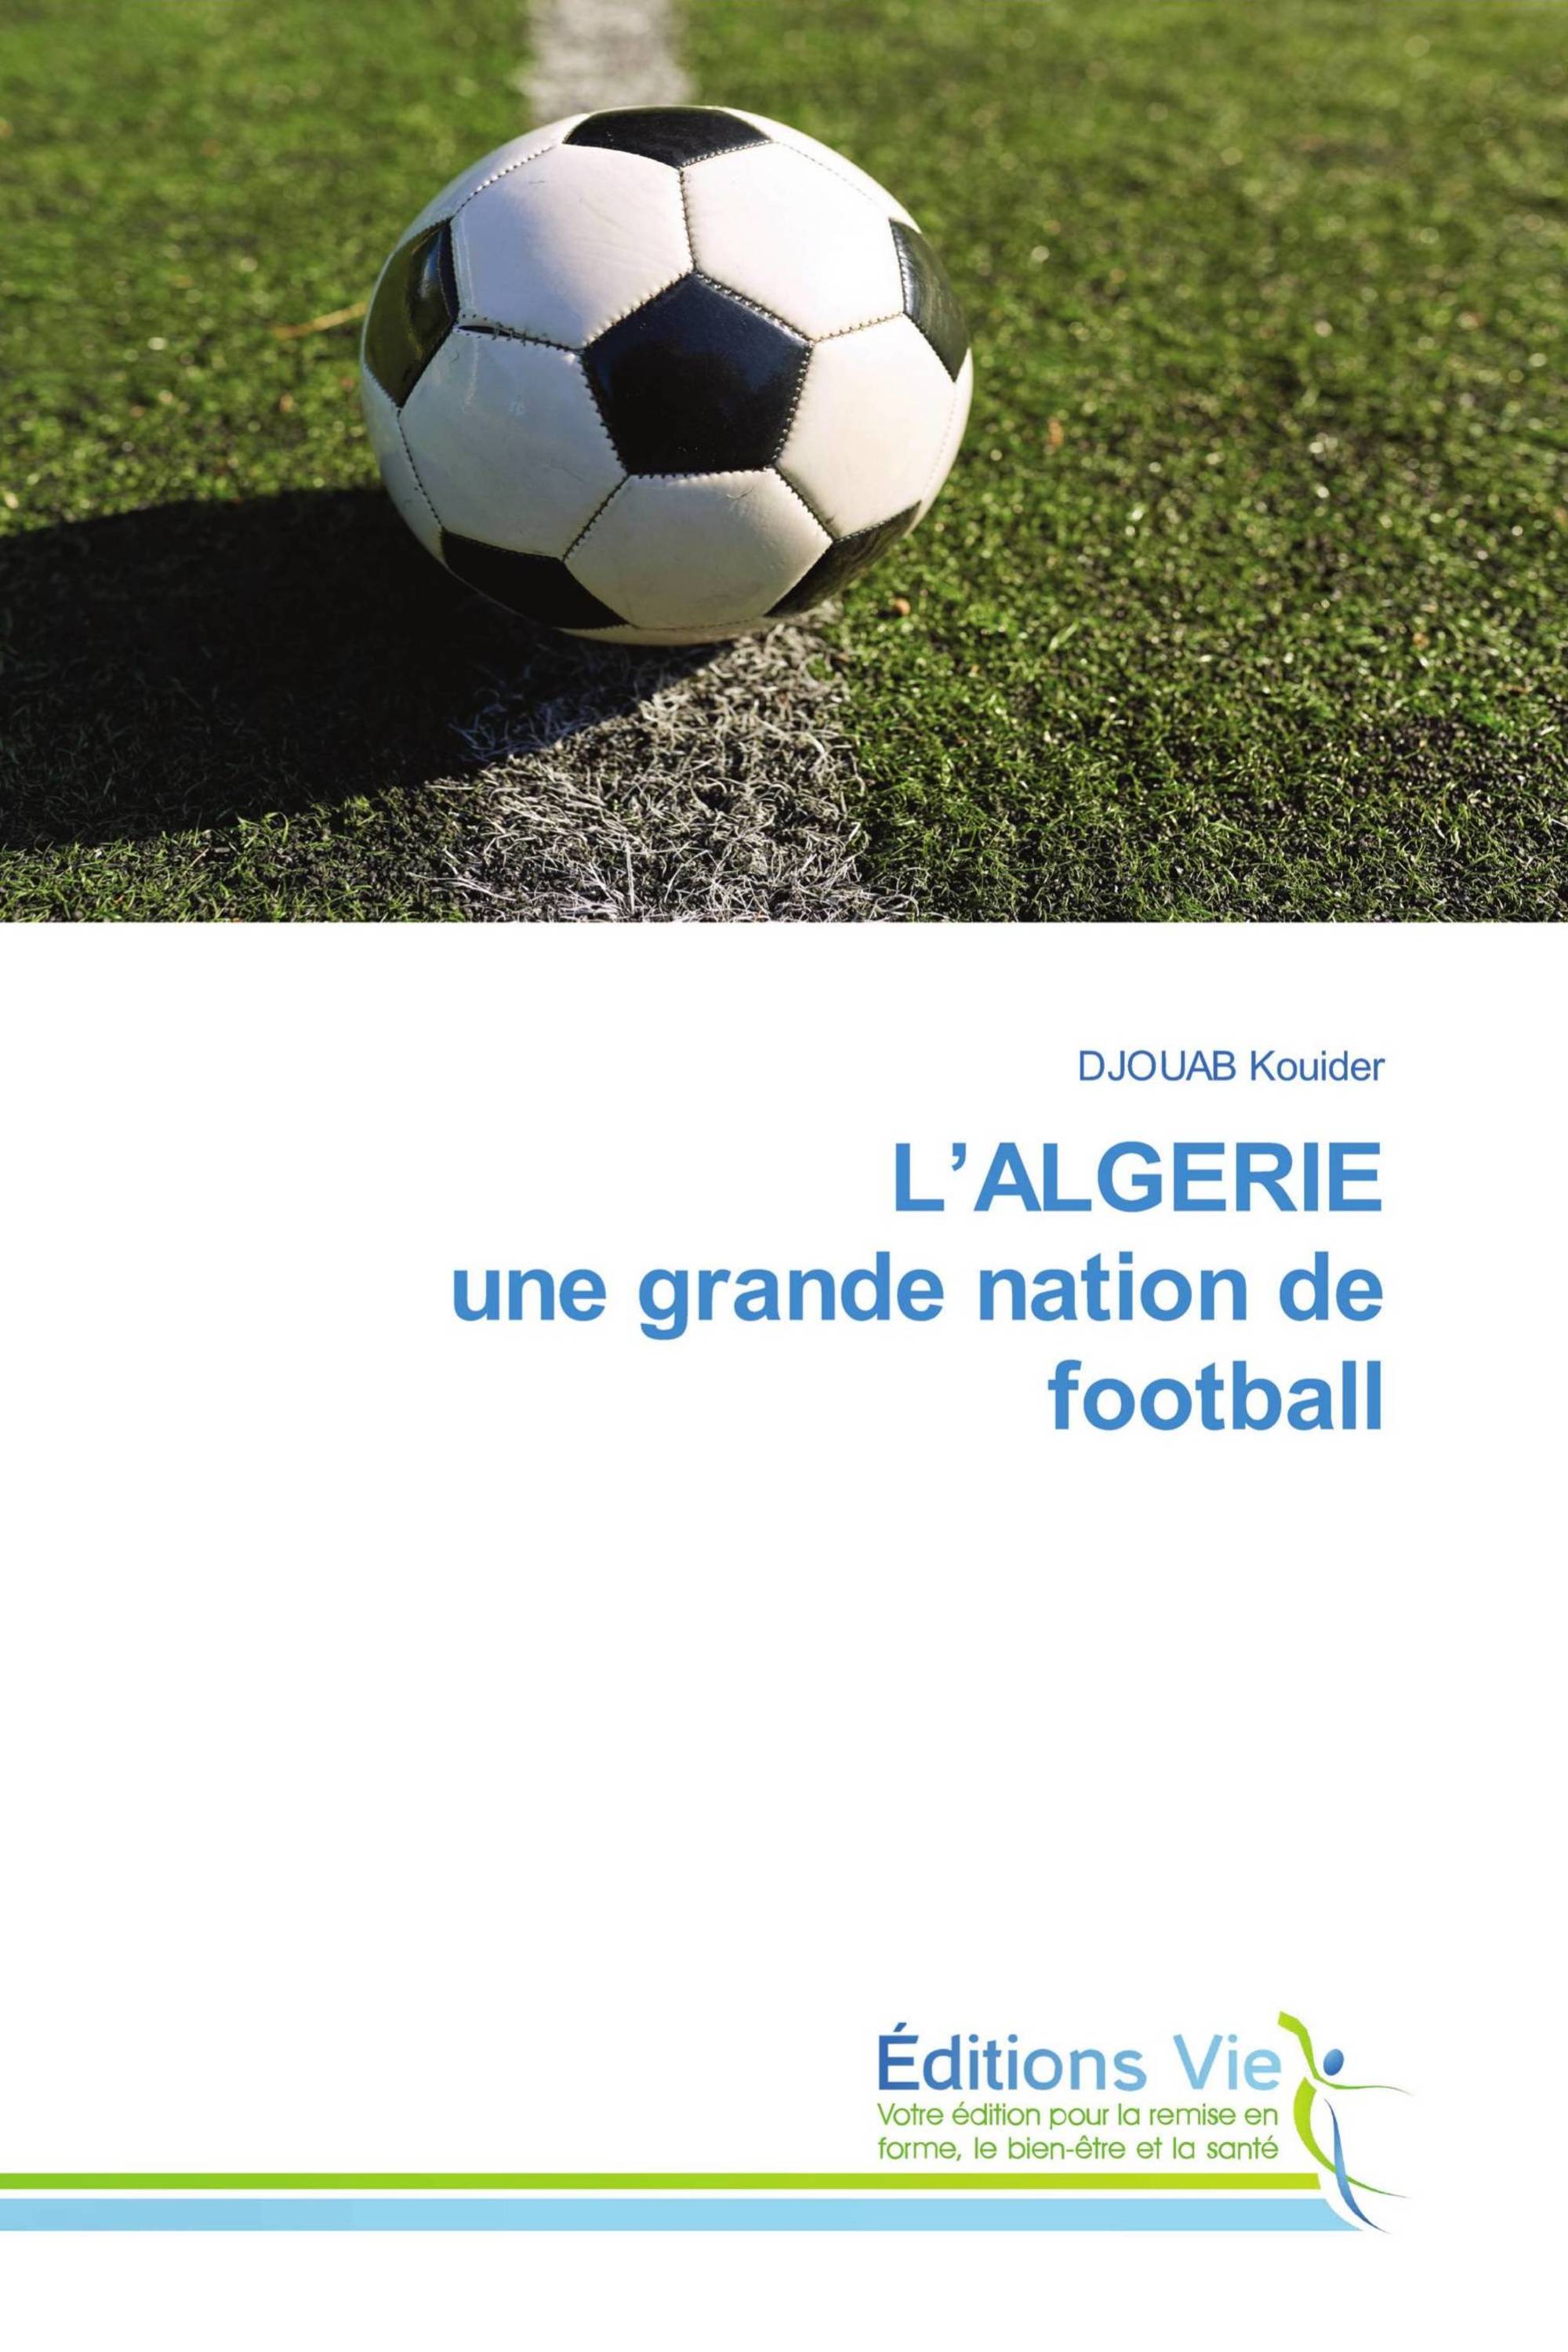 L’ALGERIE une grande nation de football